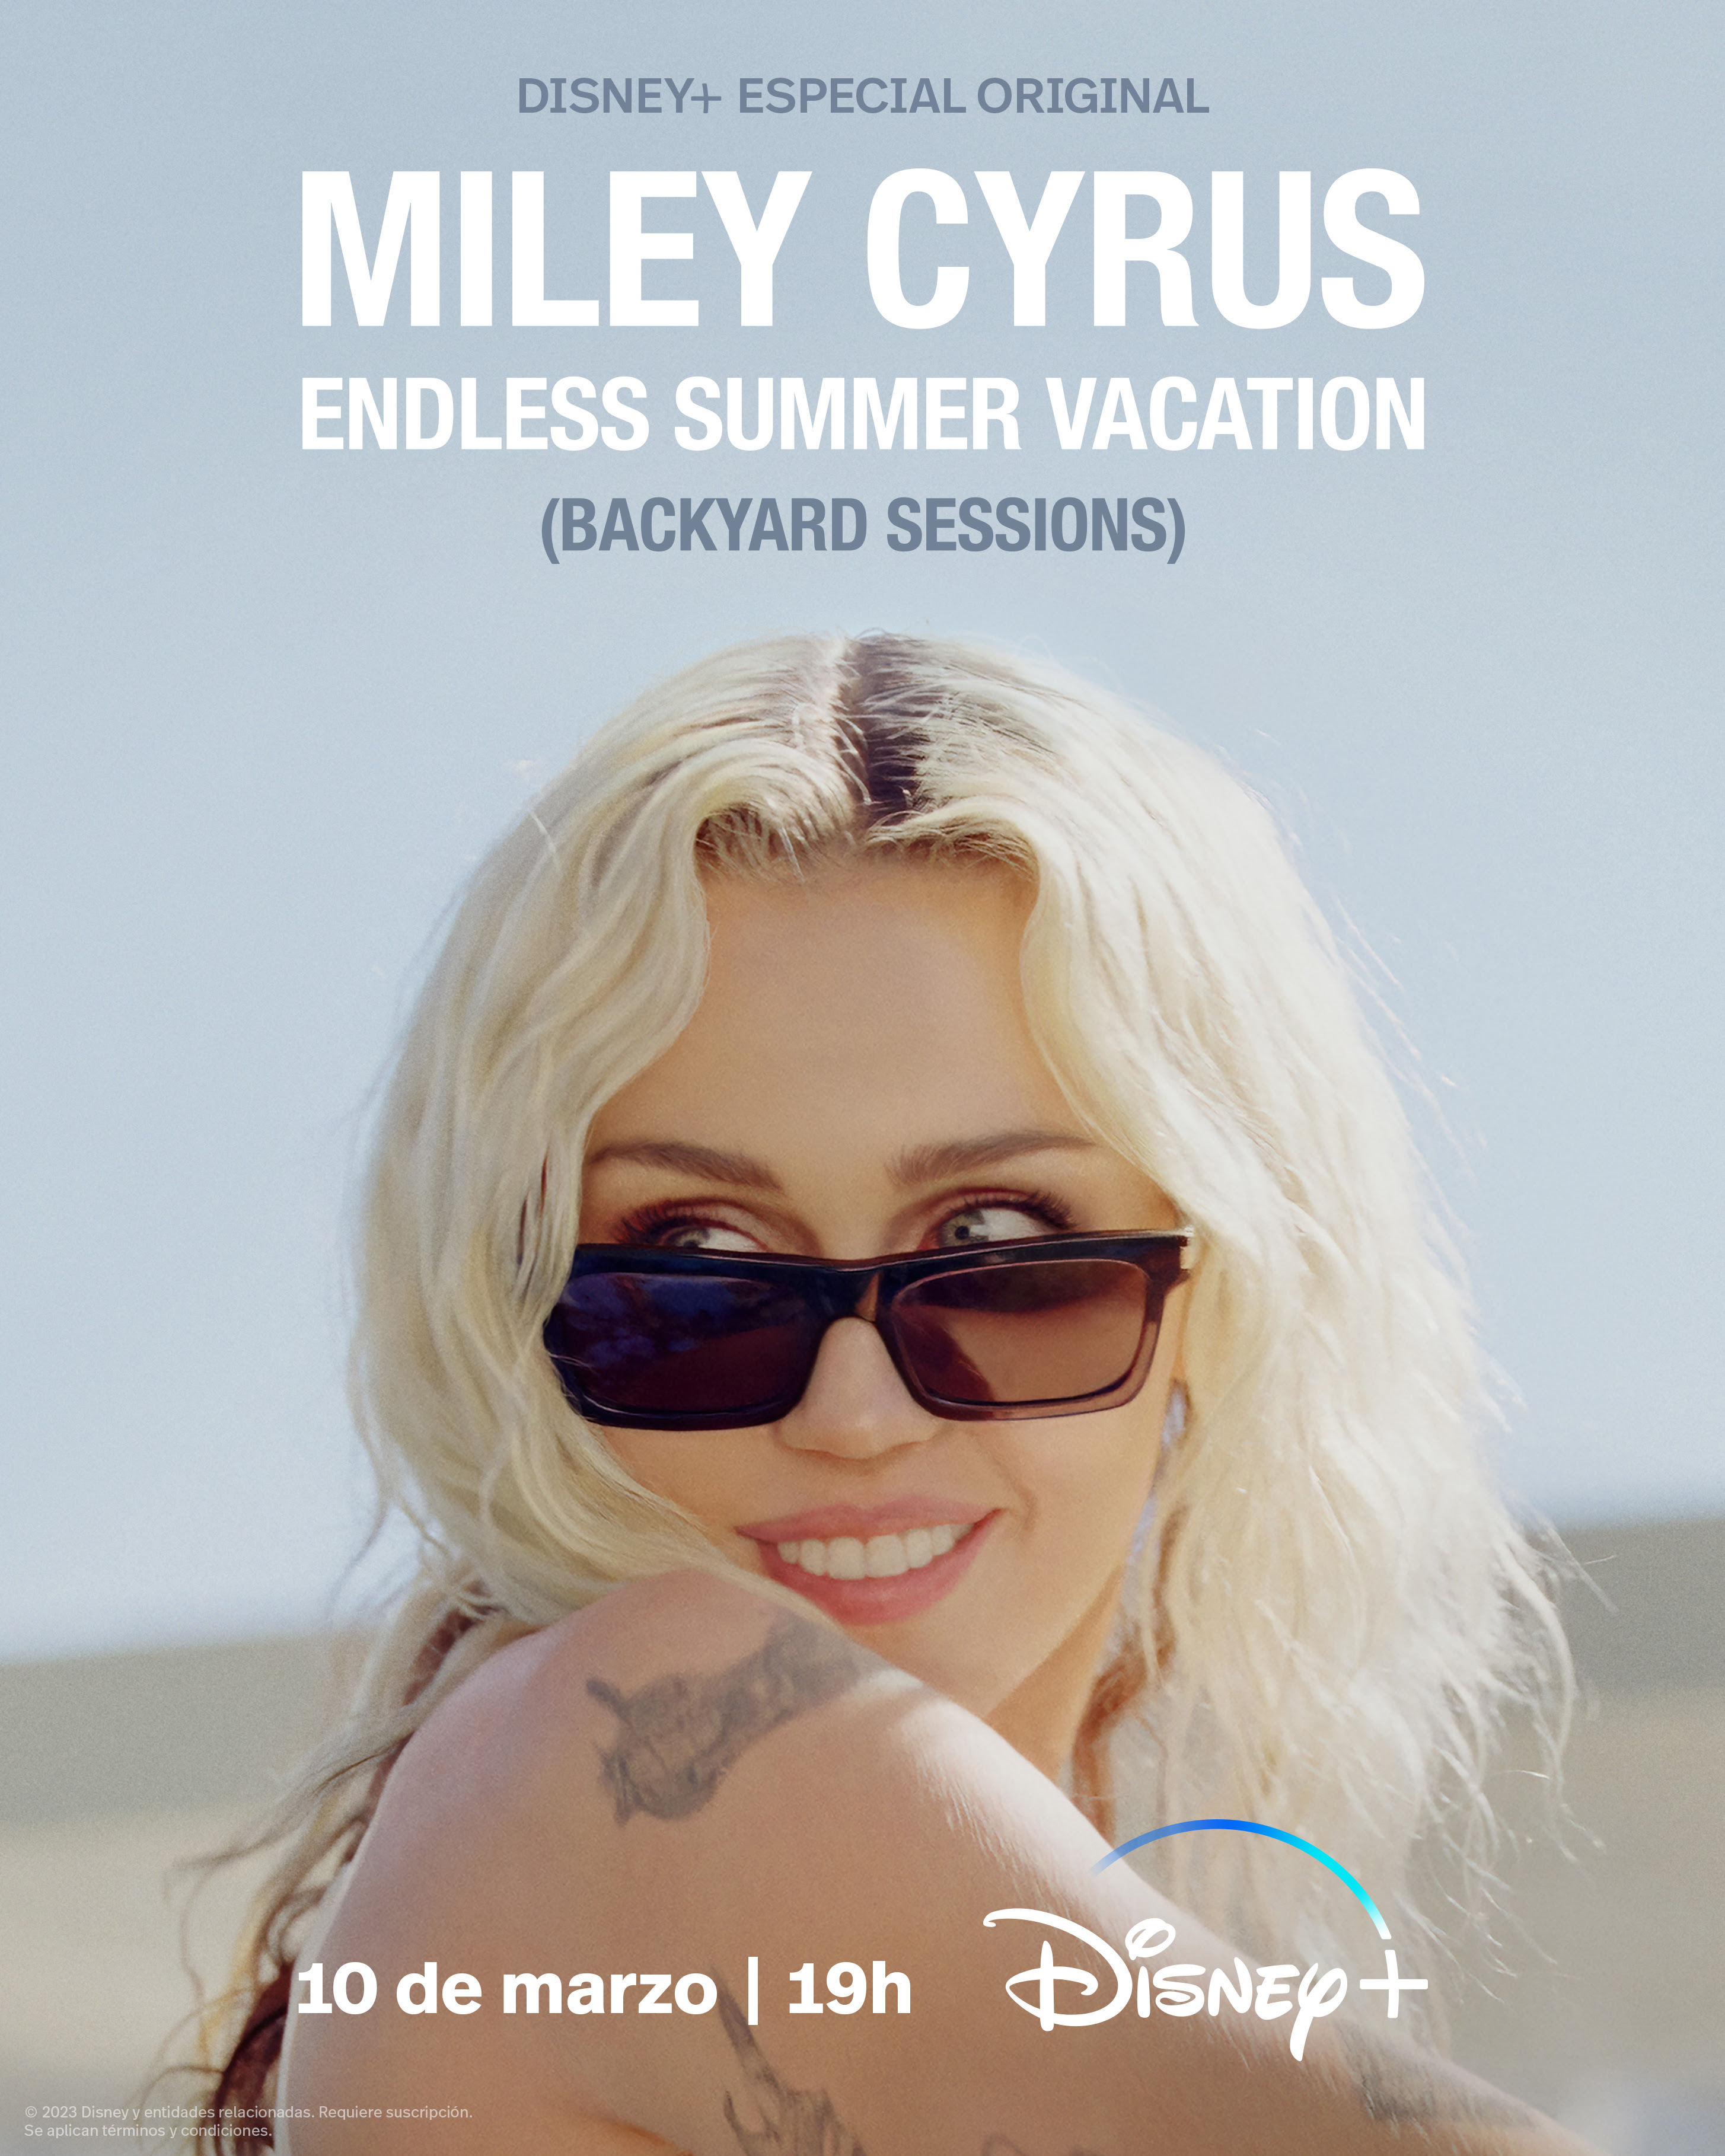 ¡Miley Cyrus Endless Summer Vacation (Backyard Sessions) estreno en Disney Plus este 10 de marzo a las 19 horas!